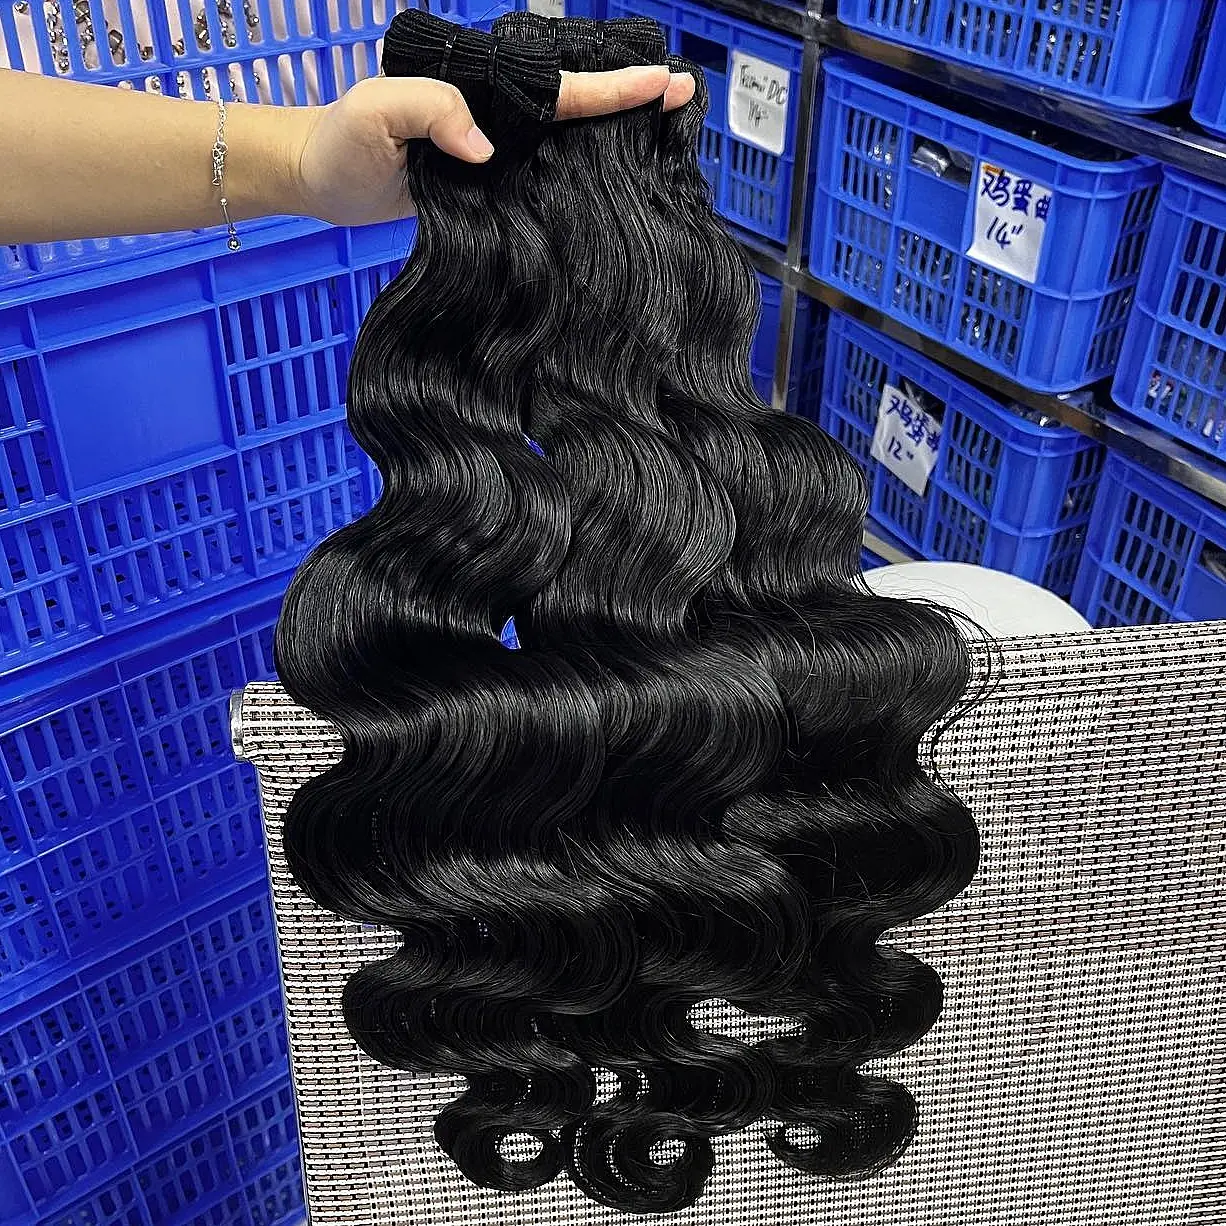 Bundel gelombang rambut manusia, rambut Virgin bergelombang keriting dalam longgar 100% ekstensi rambut Brasil Virgin mentah 3 buah 8 ~ 26 inci